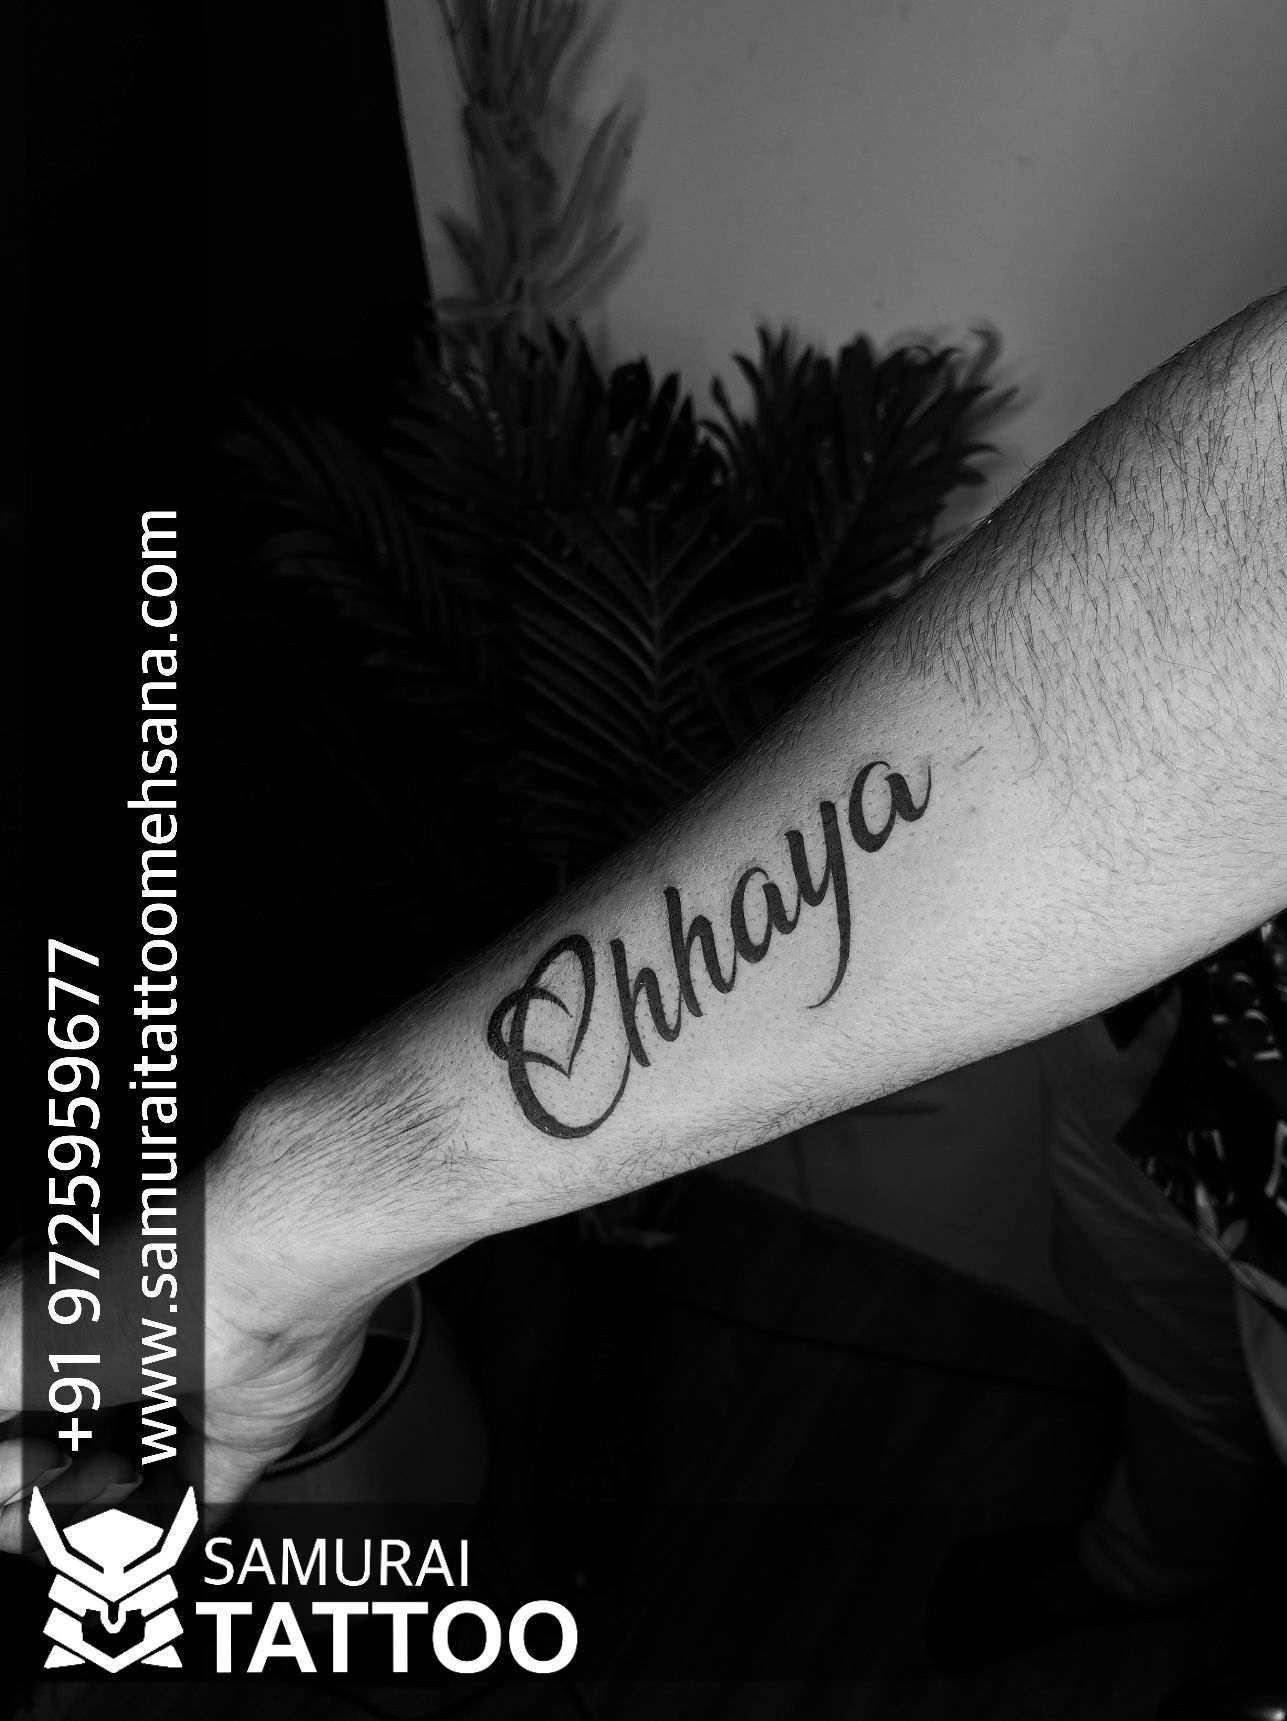 Tattoo uploaded by Inkblot tatoo studio • Durga maa tattoo done by Inkblot  tattoos contact :9620339442 • Tattoodo